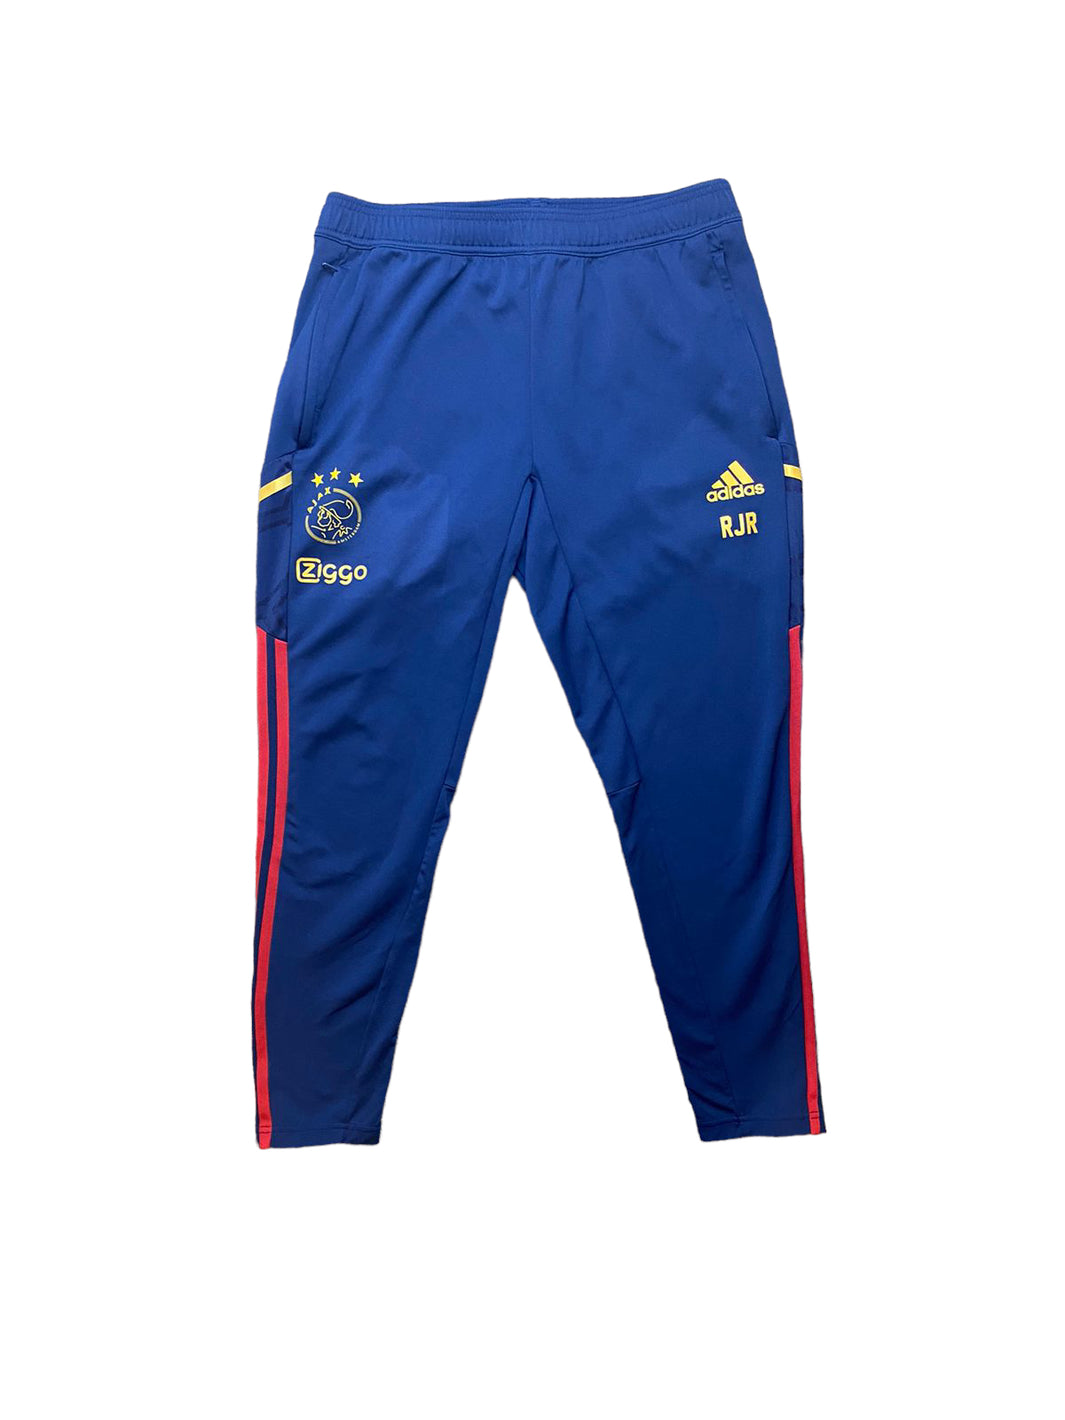 Adidas Ajax Track Pants